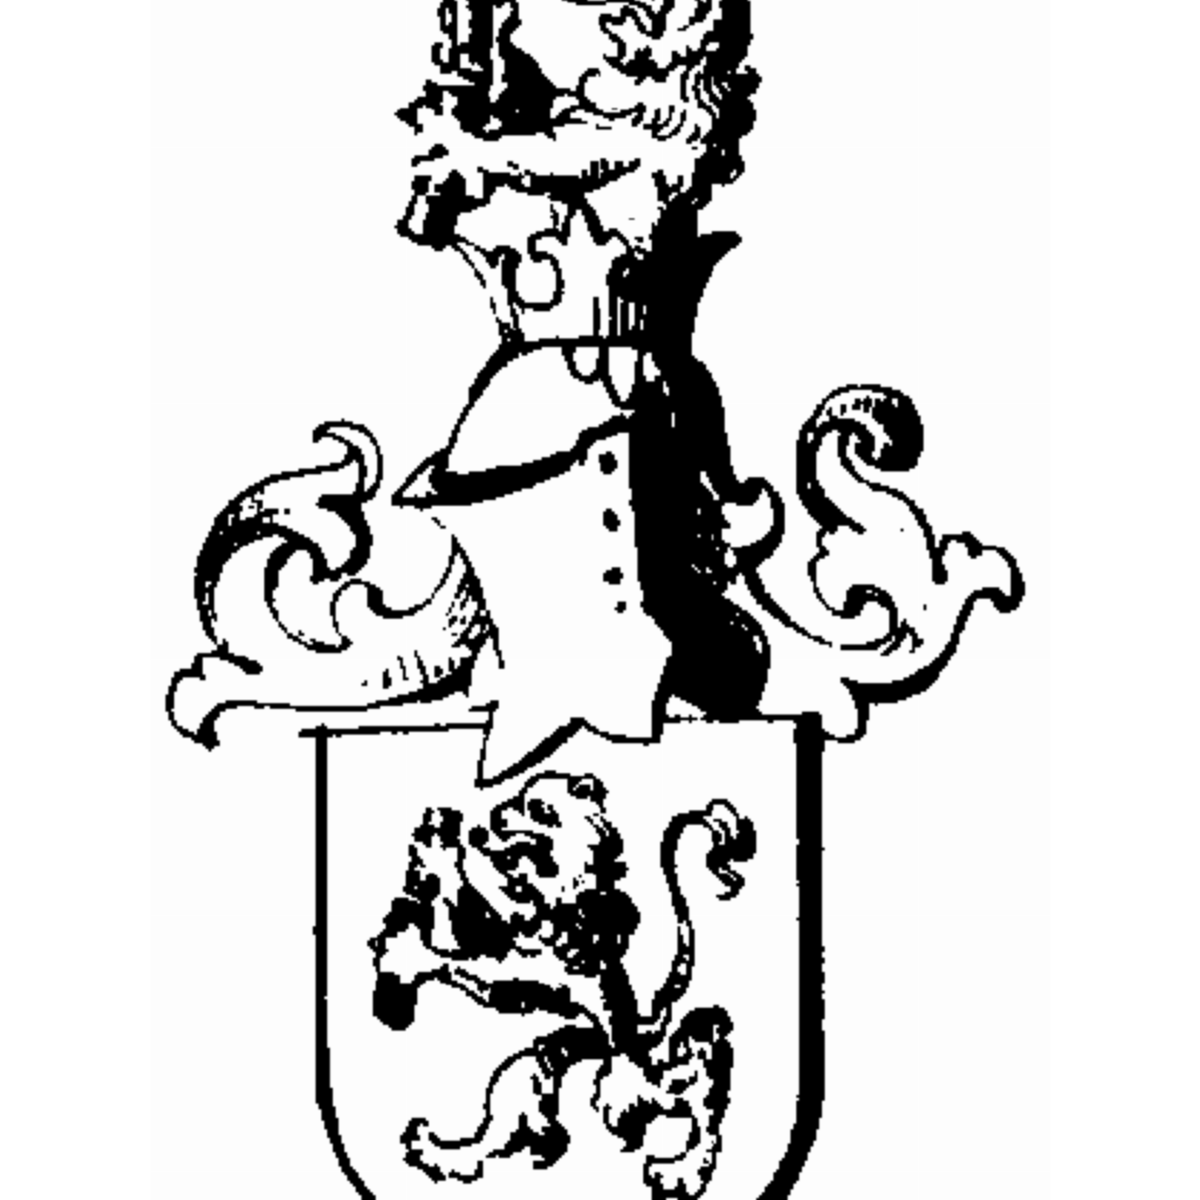 Wappen der Familie Desjardins